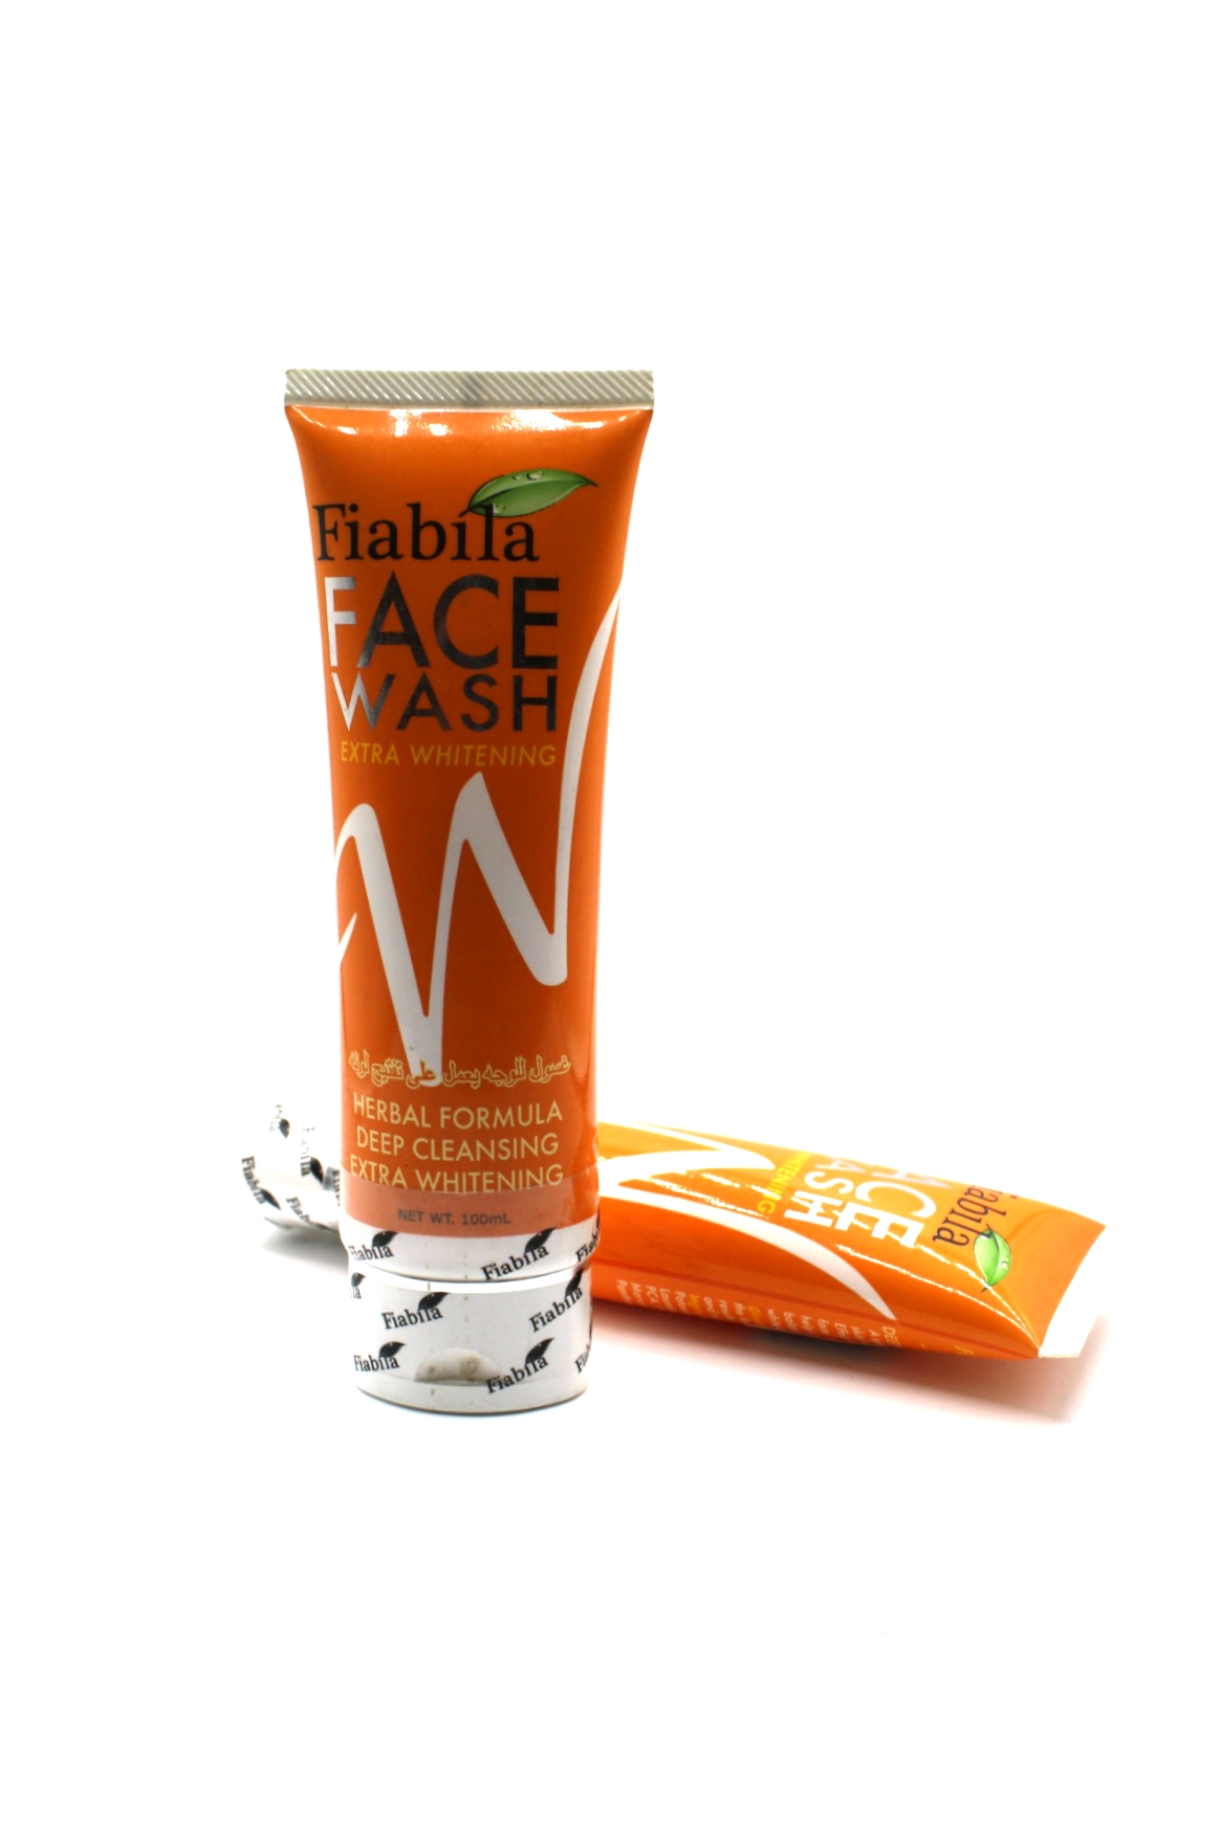 Fiabila Face Wash Extra Whitening Herbal Formula 100ml (Imported)